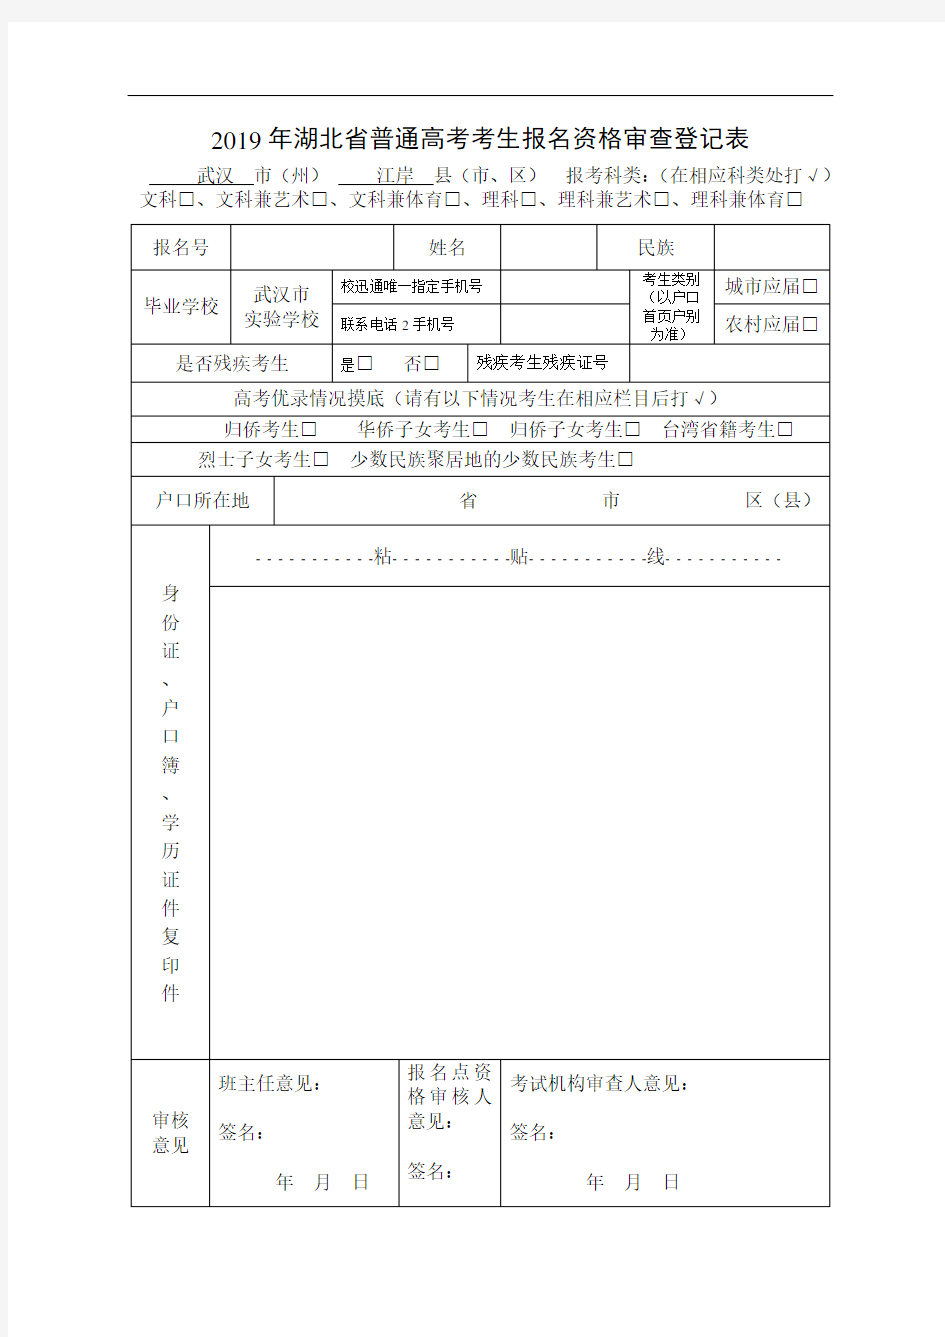 2019年湖北省普通高考考生报名资格审查登记表